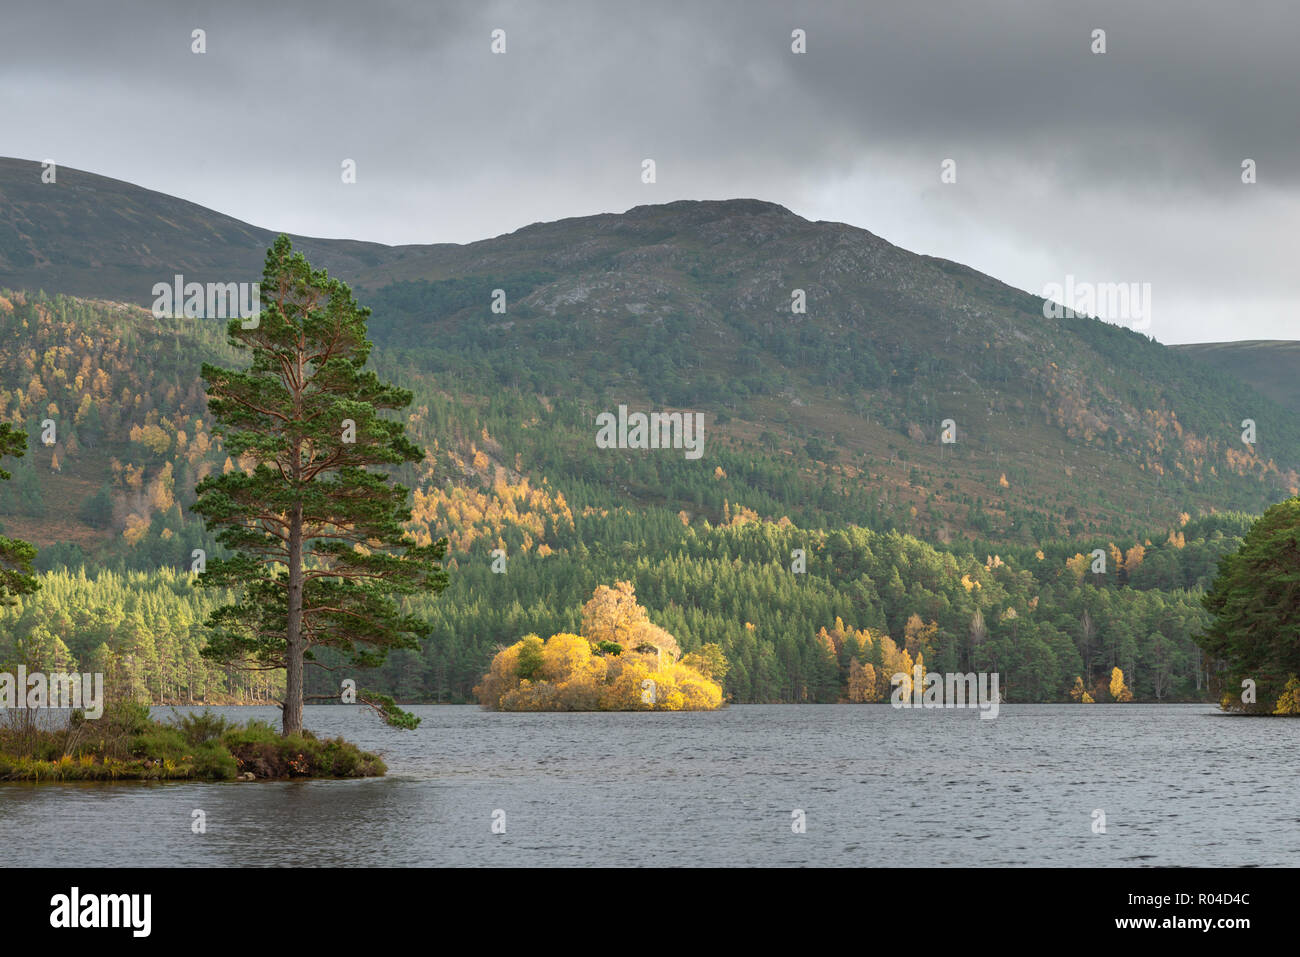 Loch an Eilein, Rothiemurchus dans le parc national de Cairngorm dans les Highlands écossais. Prise à l'automne lorsque l'arbre couleurs sont en transition Banque D'Images